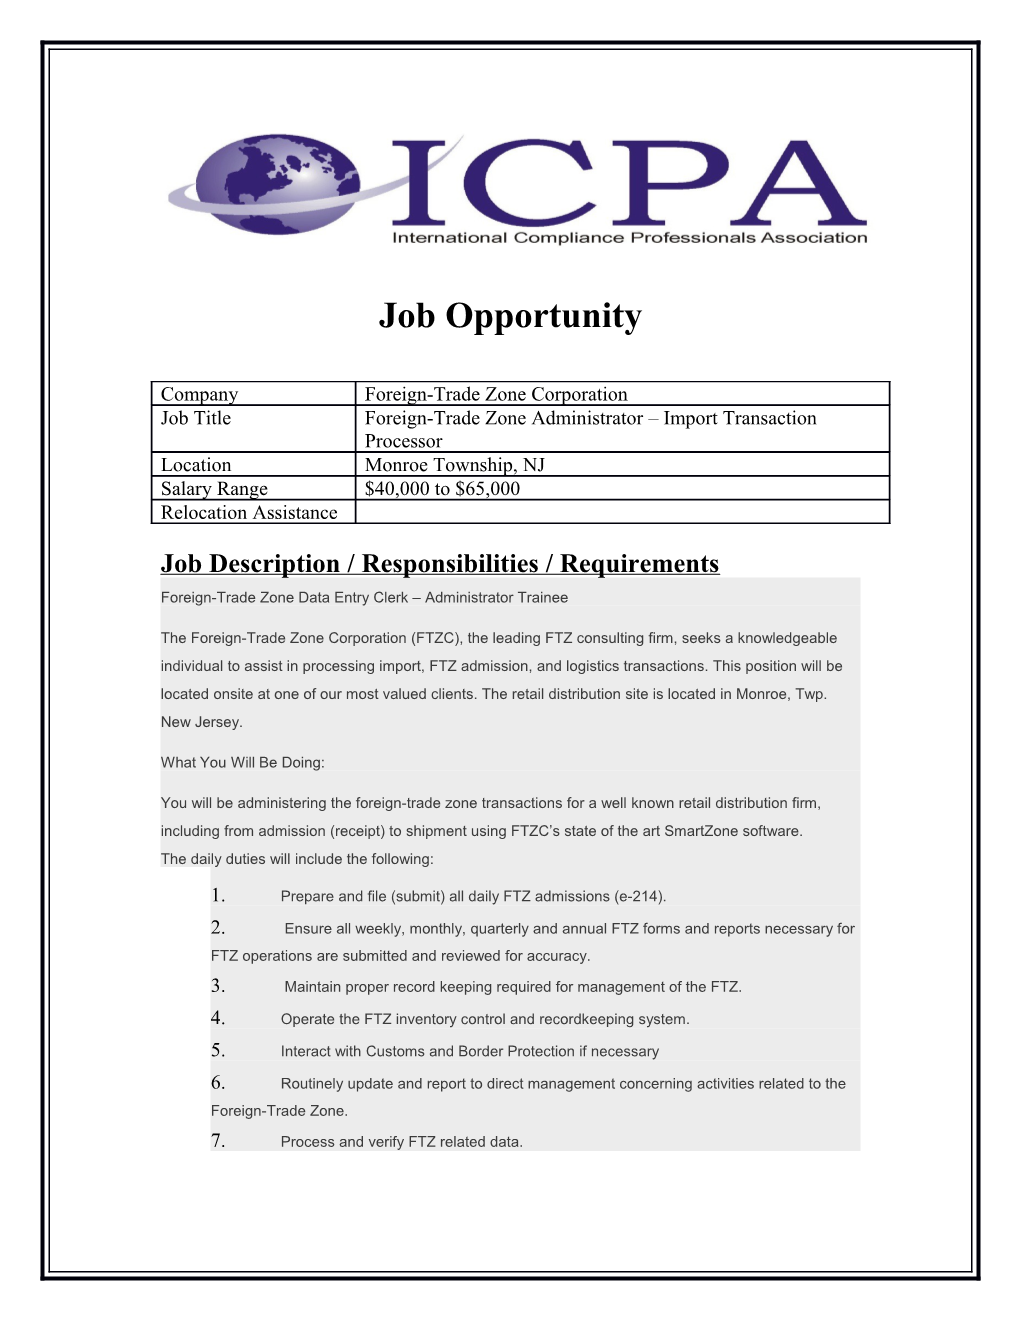 Job Description / Responsibilities / Requirements s1